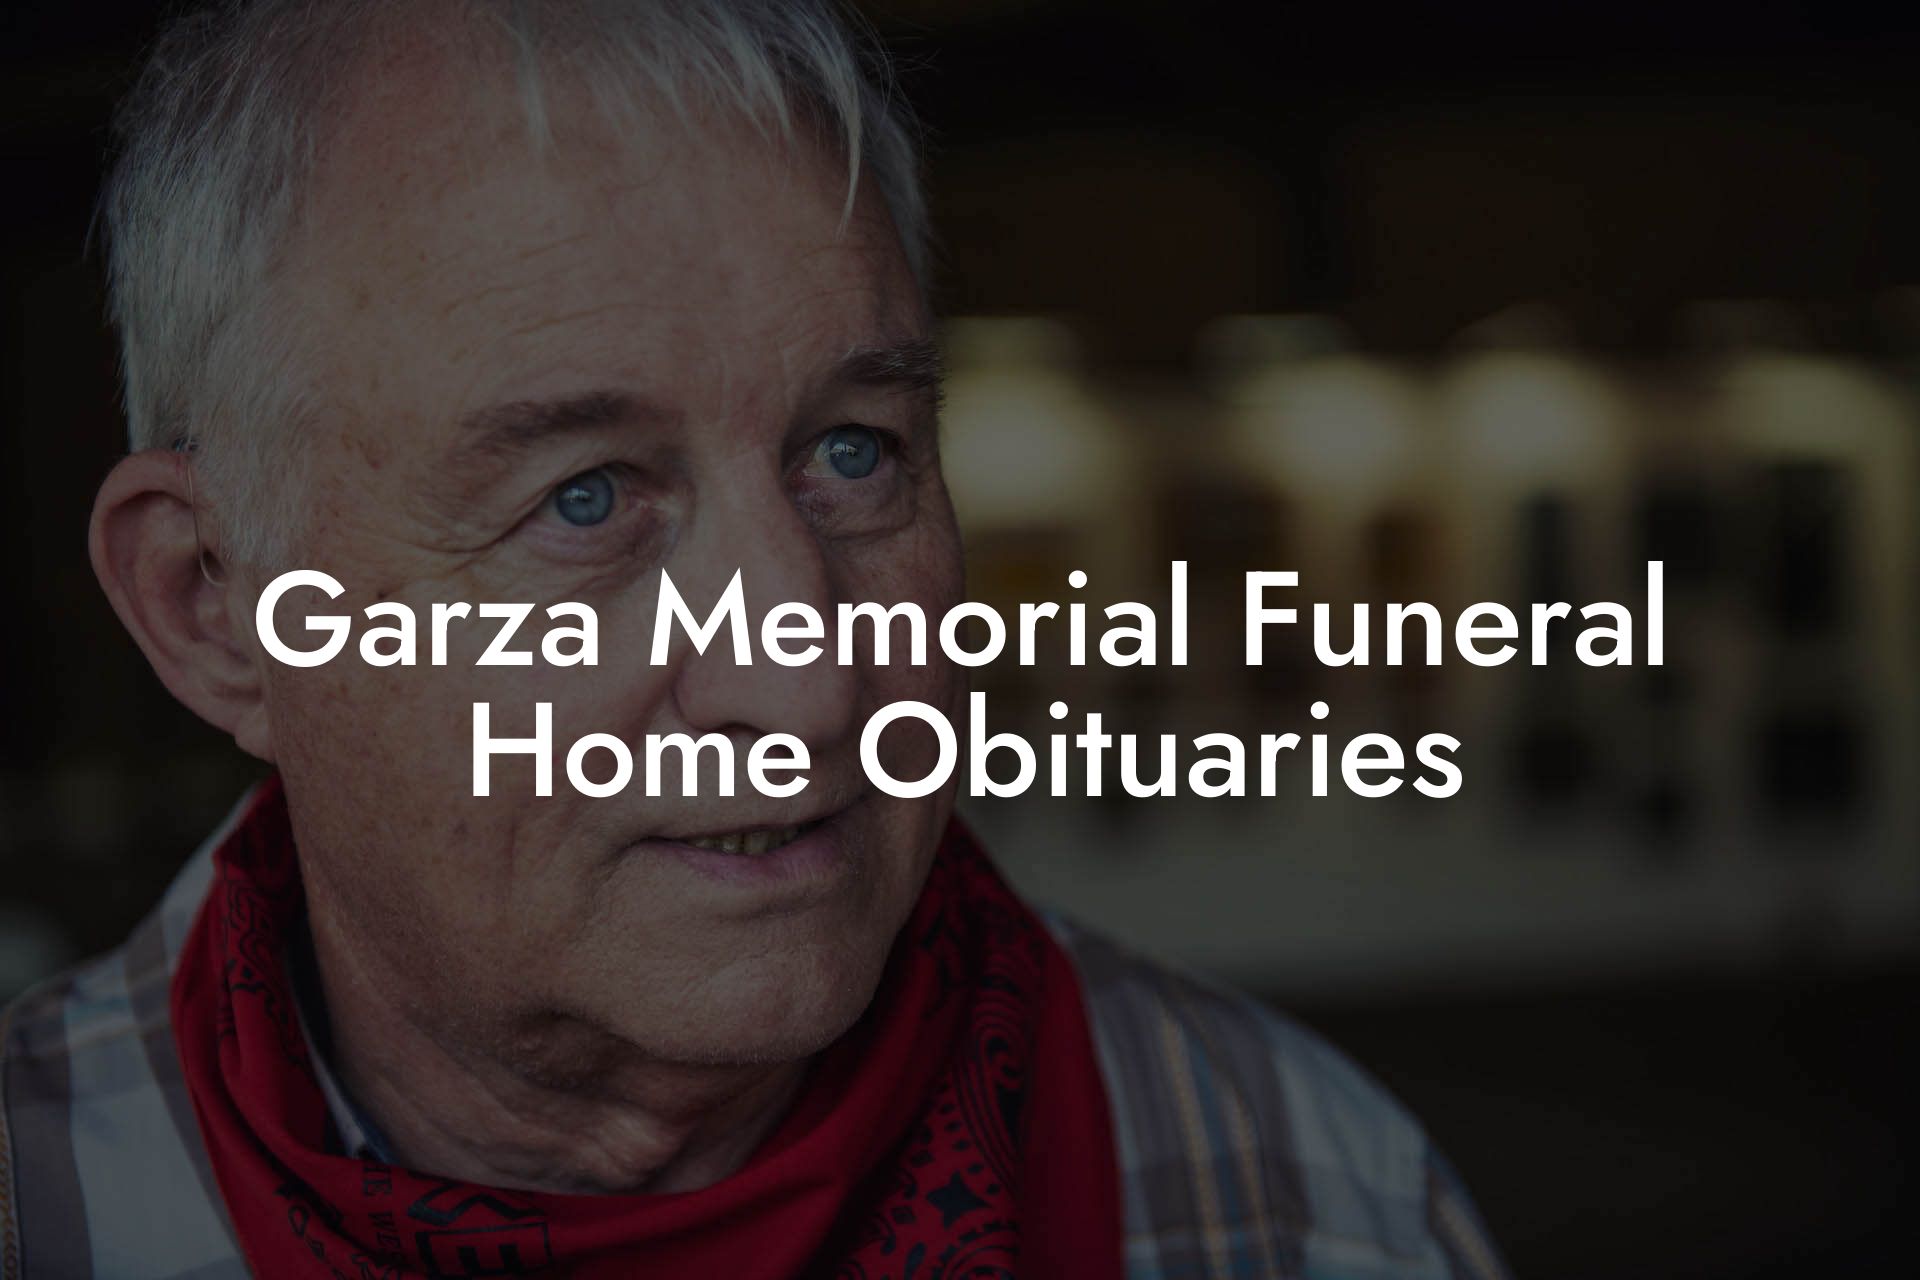 Garza Memorial Funeral Home Obituaries